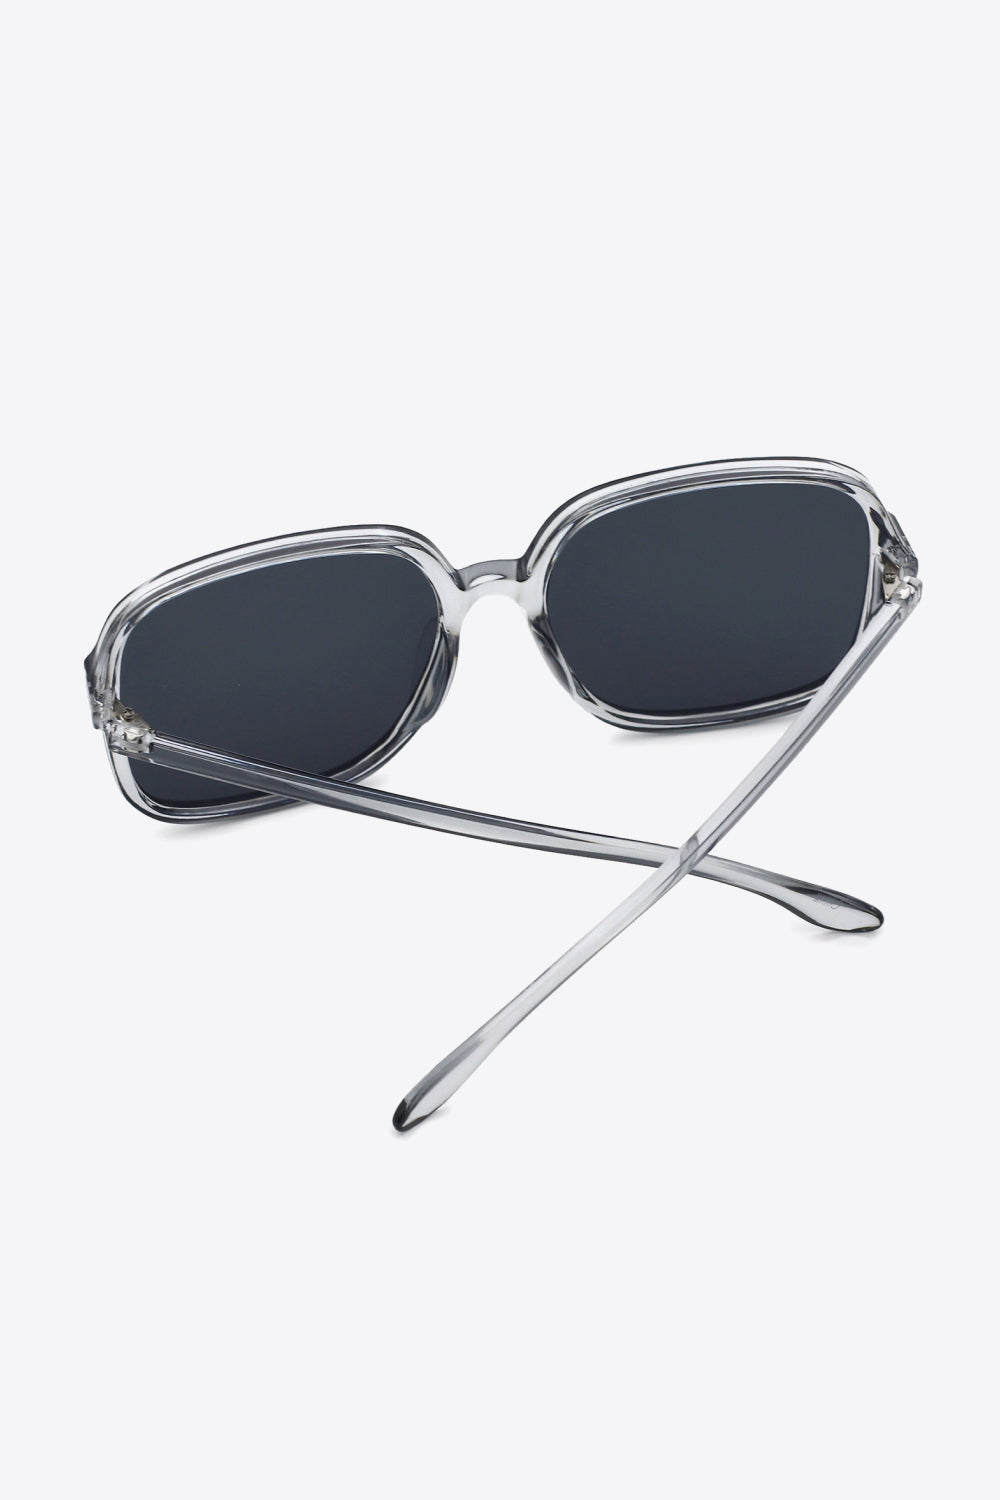 White Smoke Polycarbonate Square Sunglasses Sunglasses